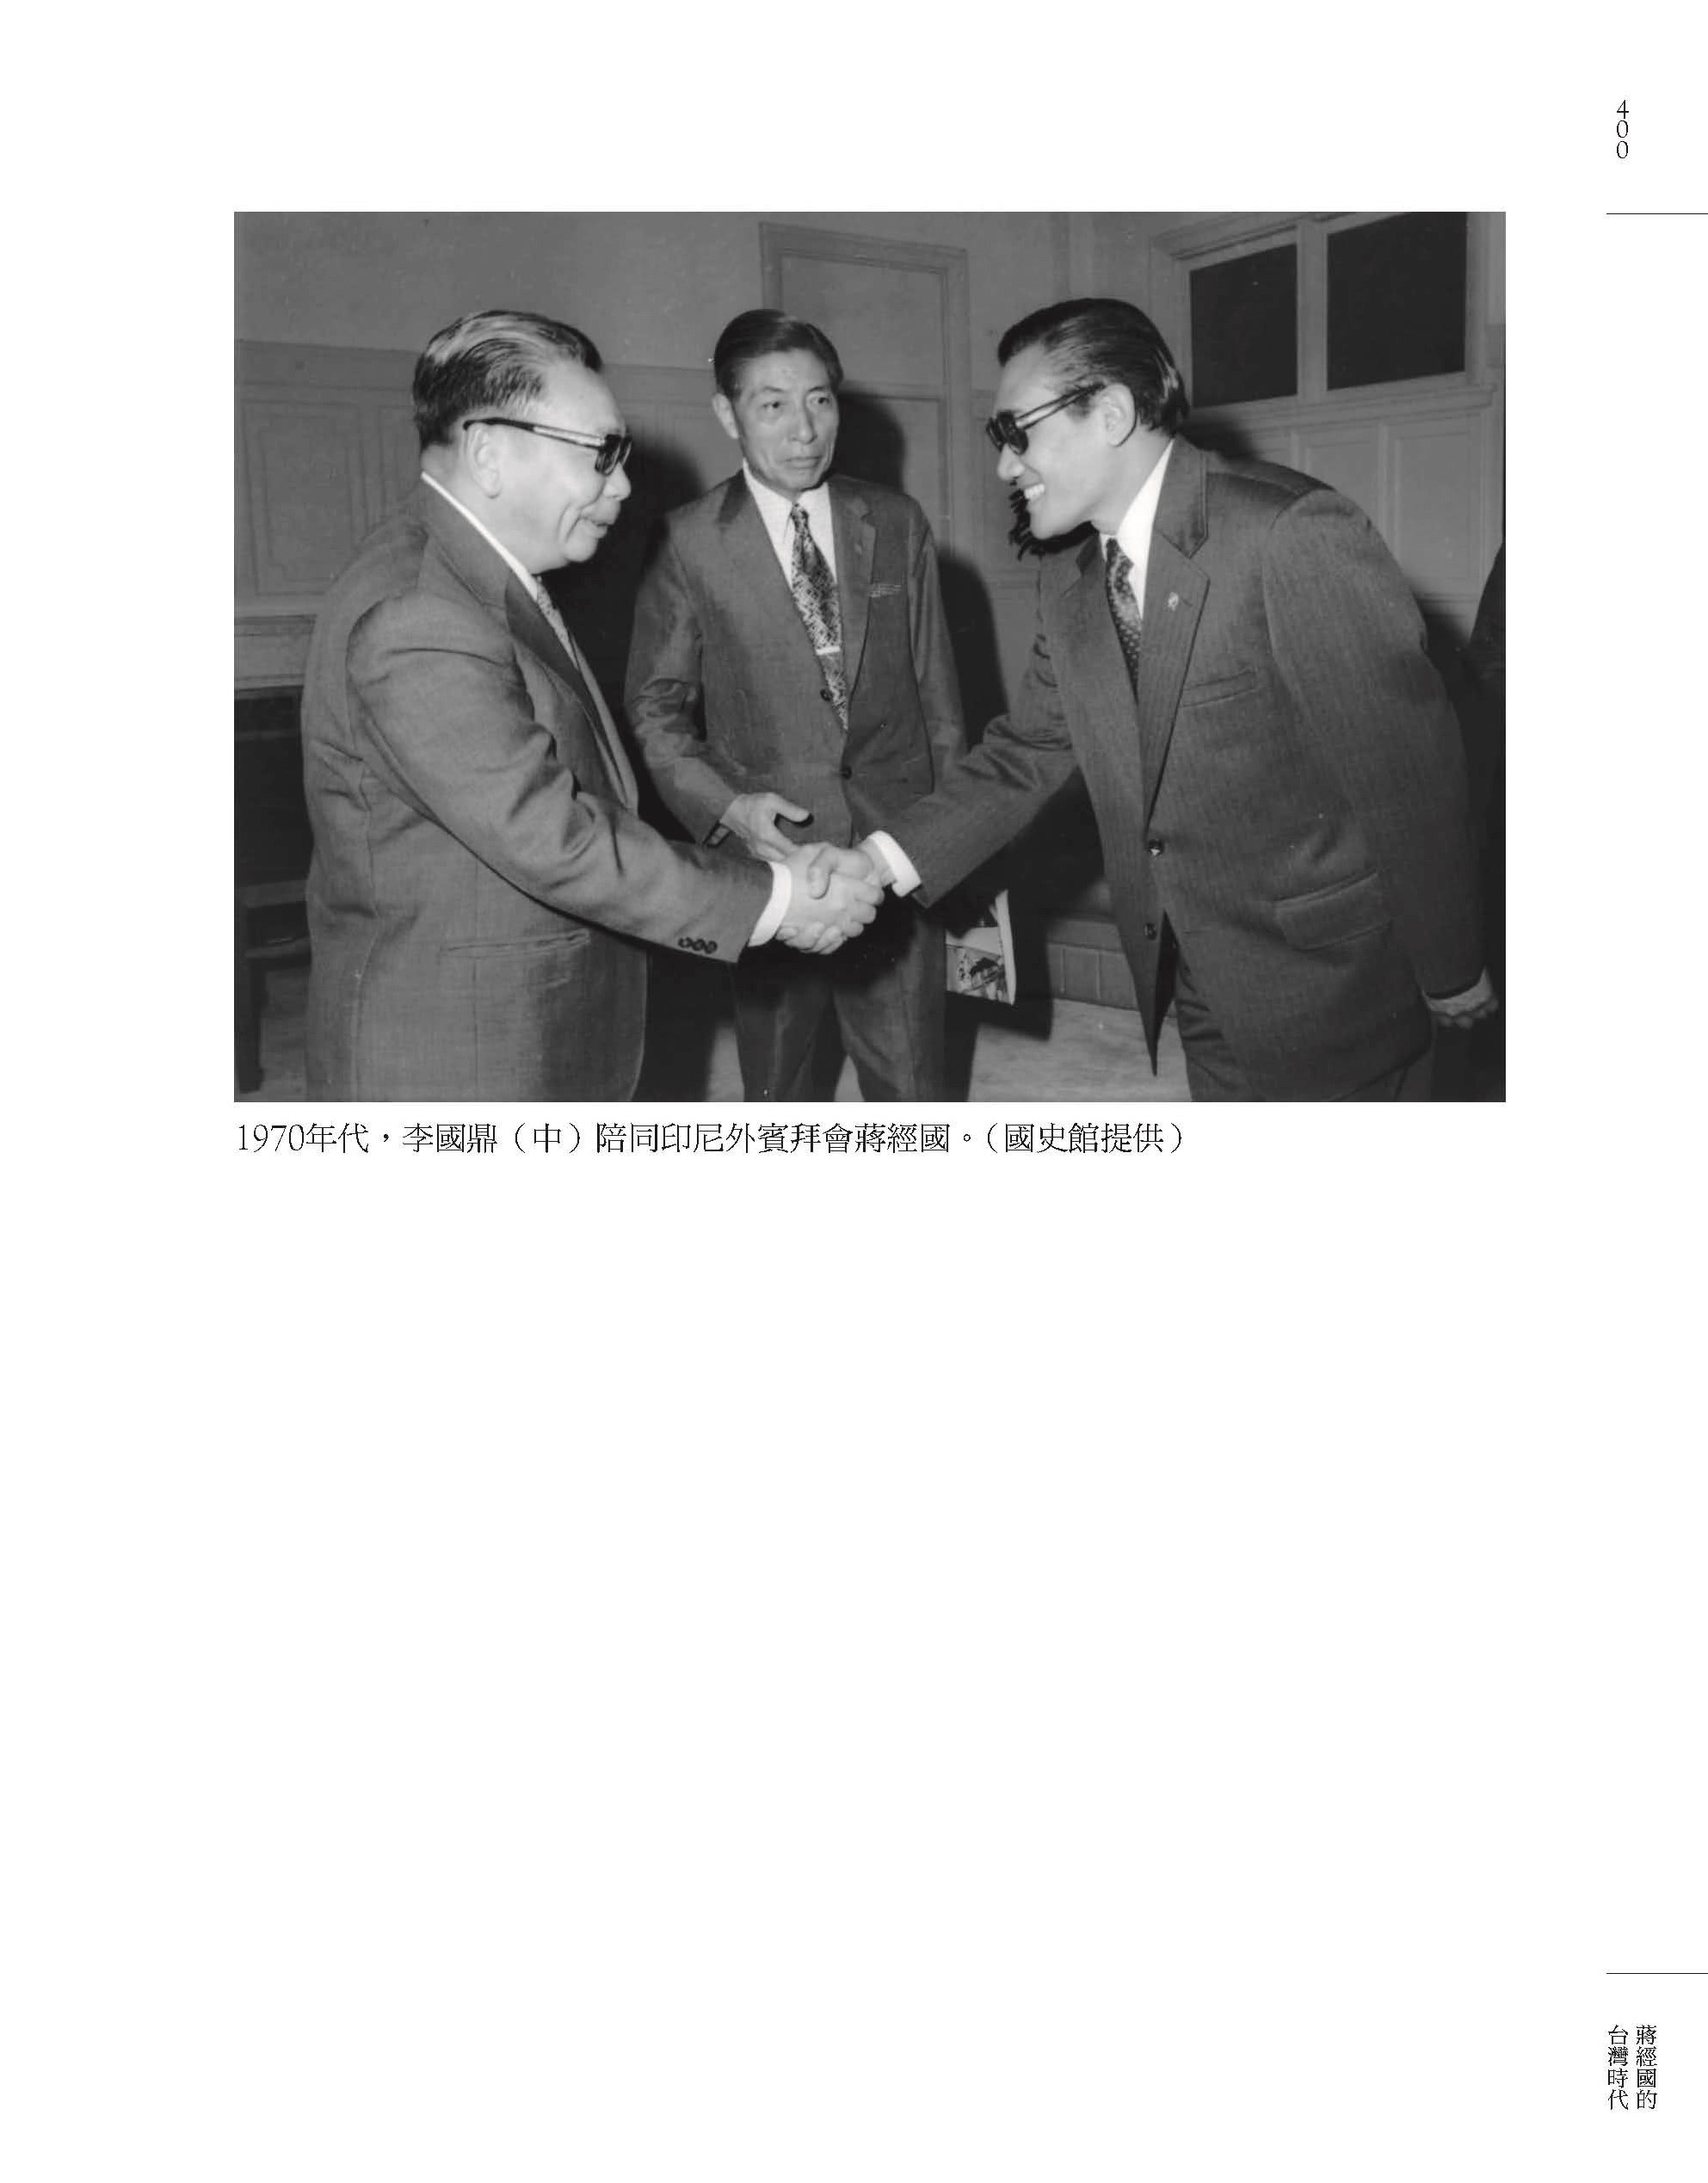 蔣經國的台灣時代：中華民國與冷戰下的台灣